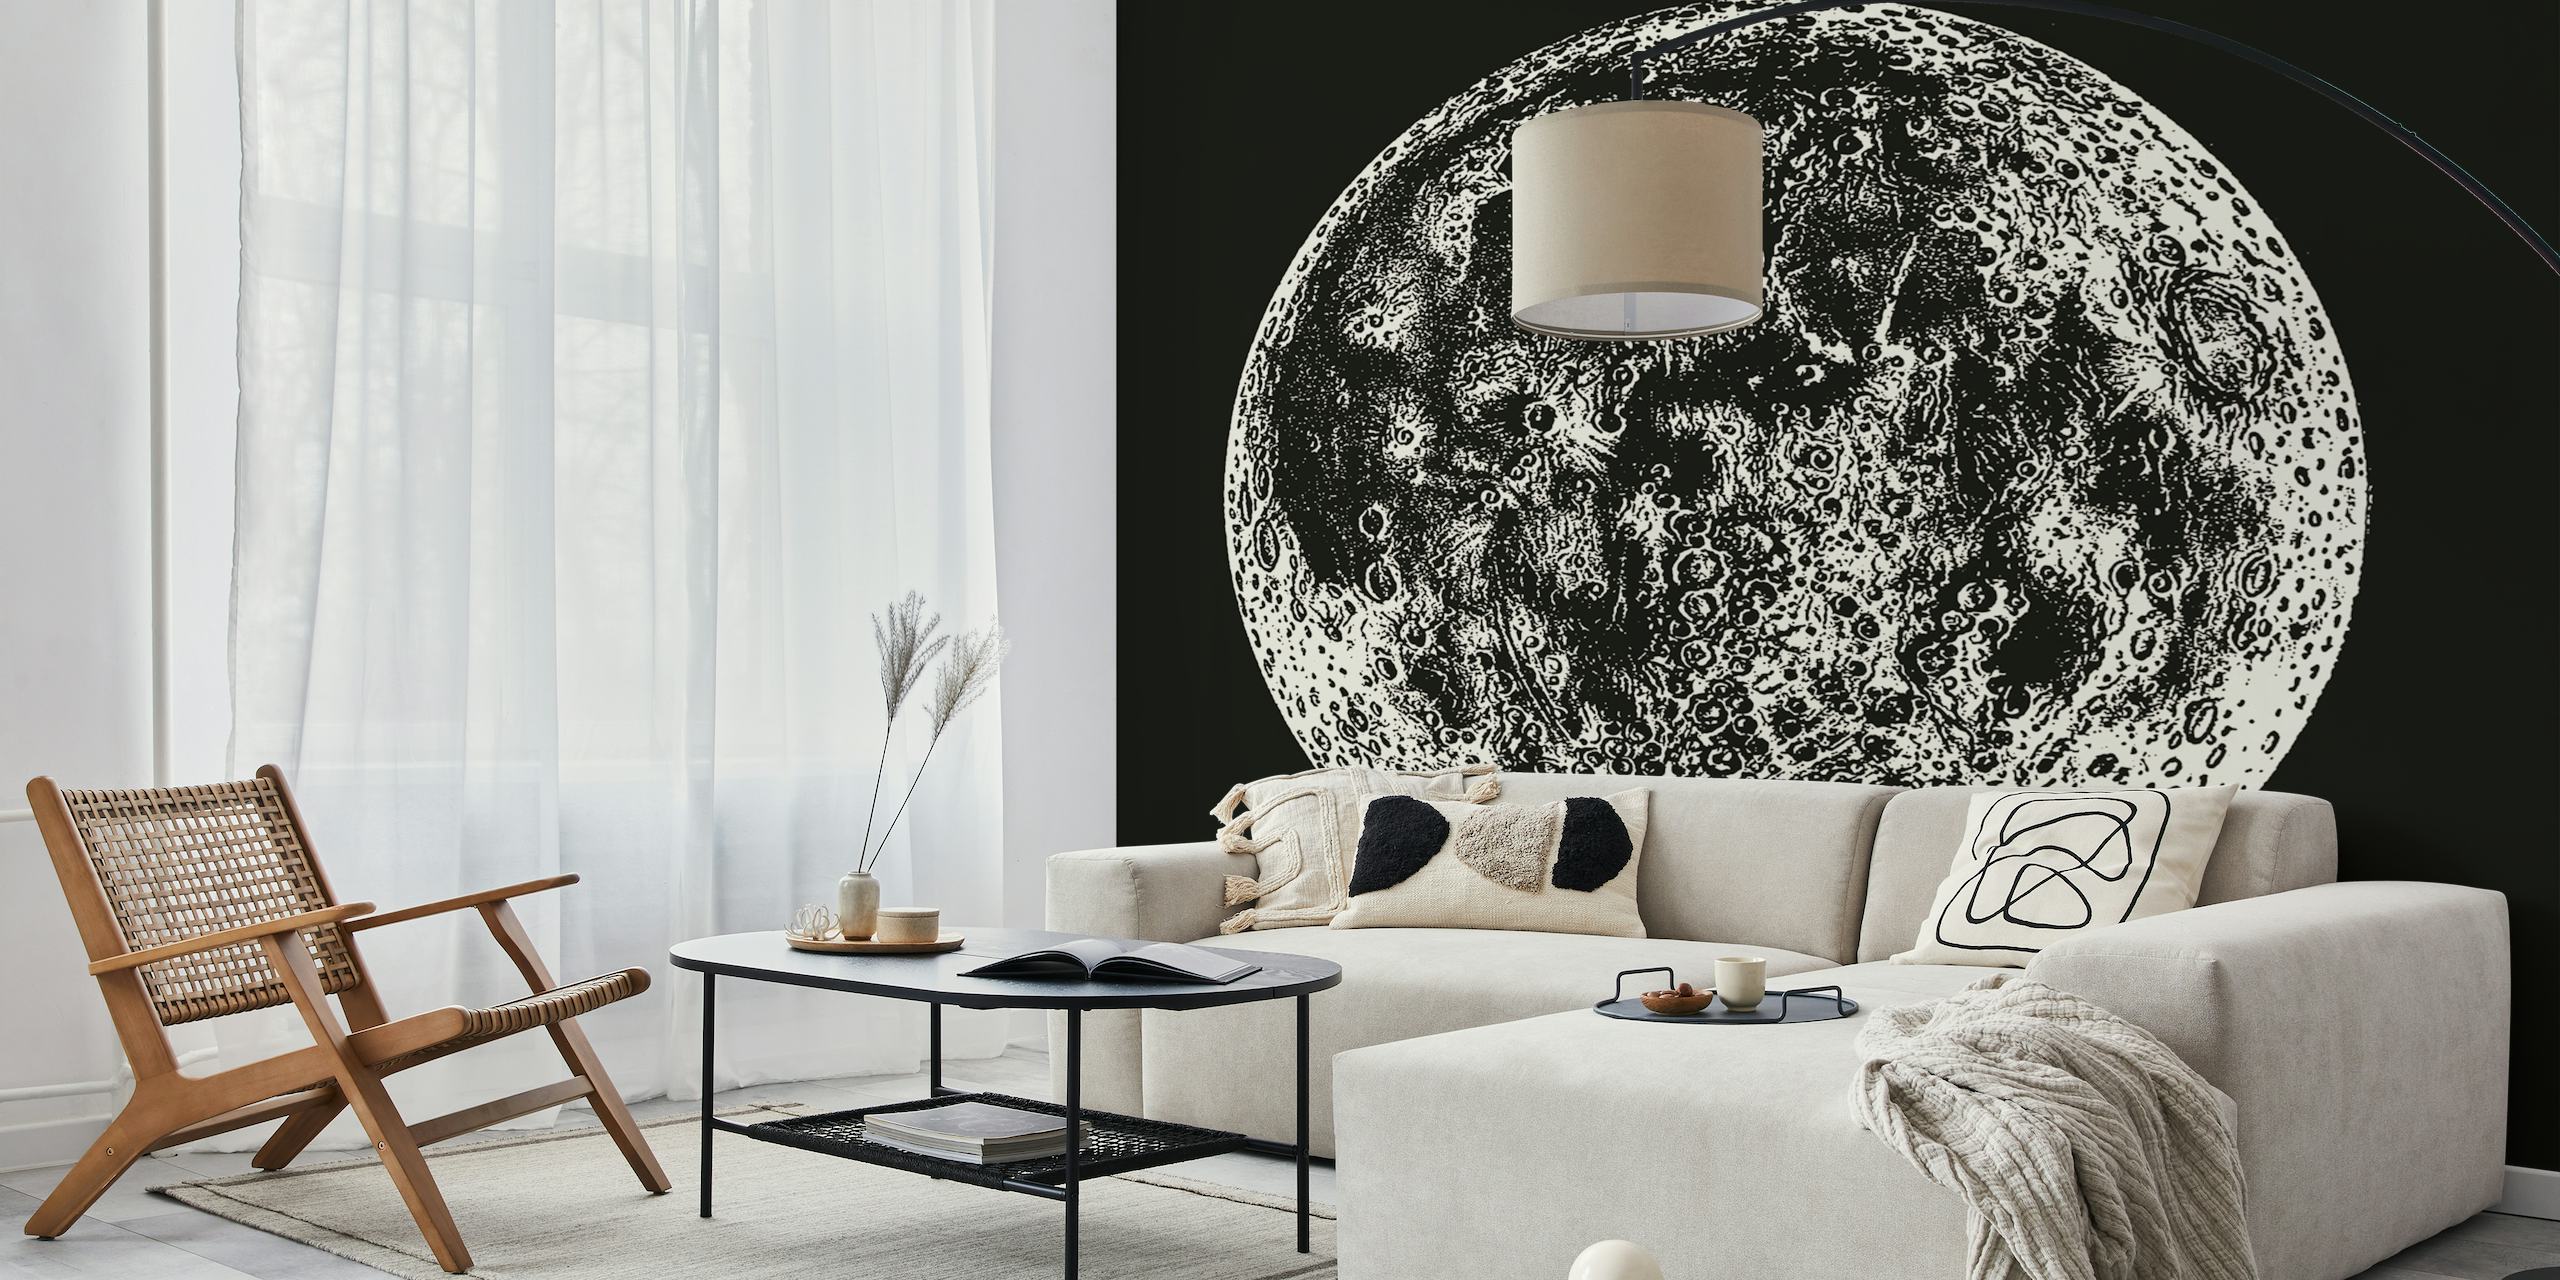 Full Moon - Vintage Astër papel de parede